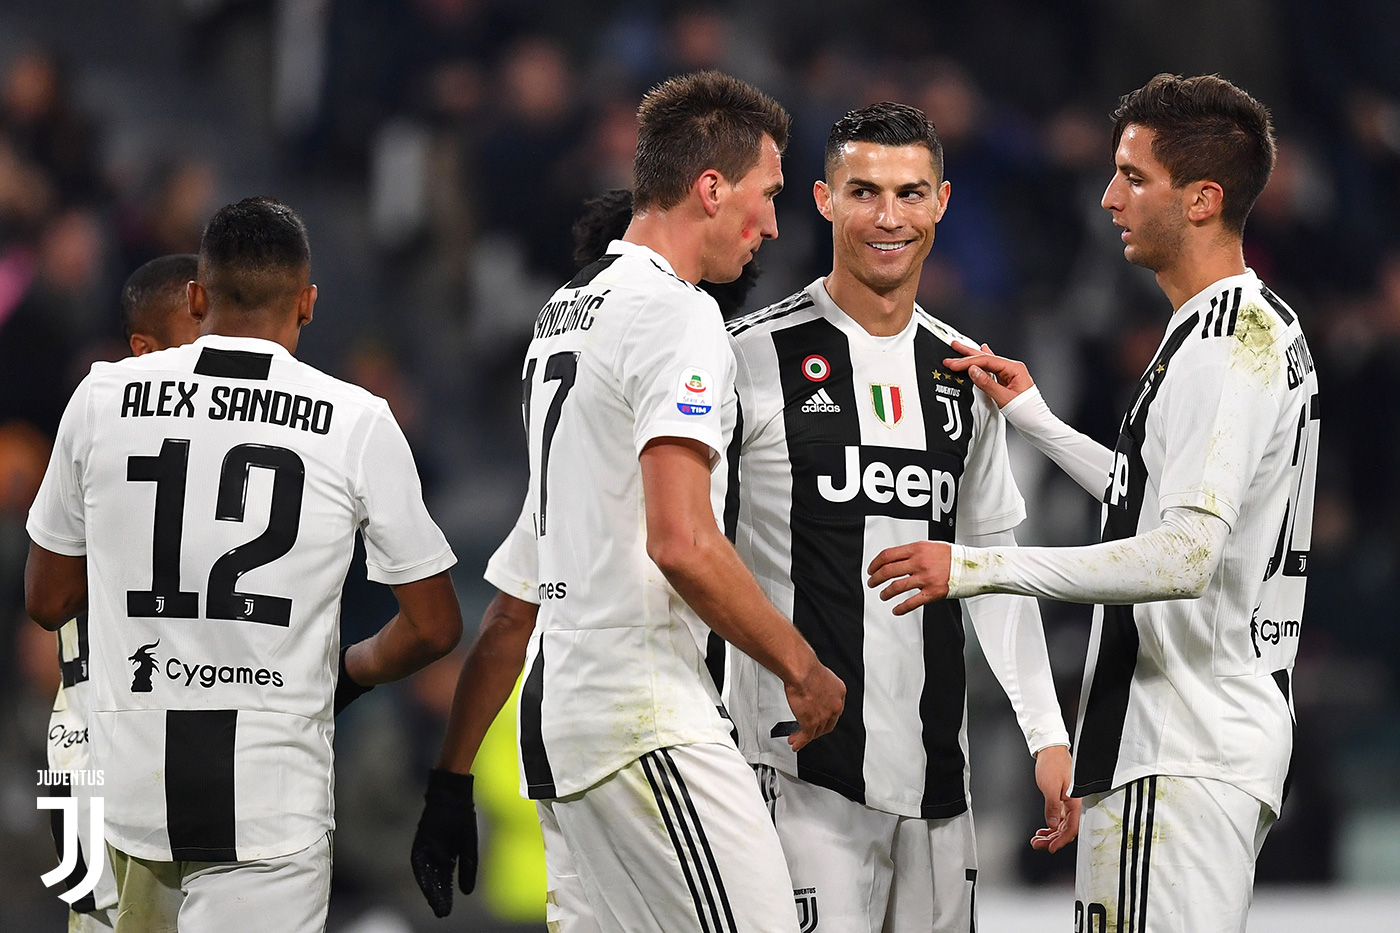 Ronaldo après son doublé contre Udinese : «on s’est bien amusé»